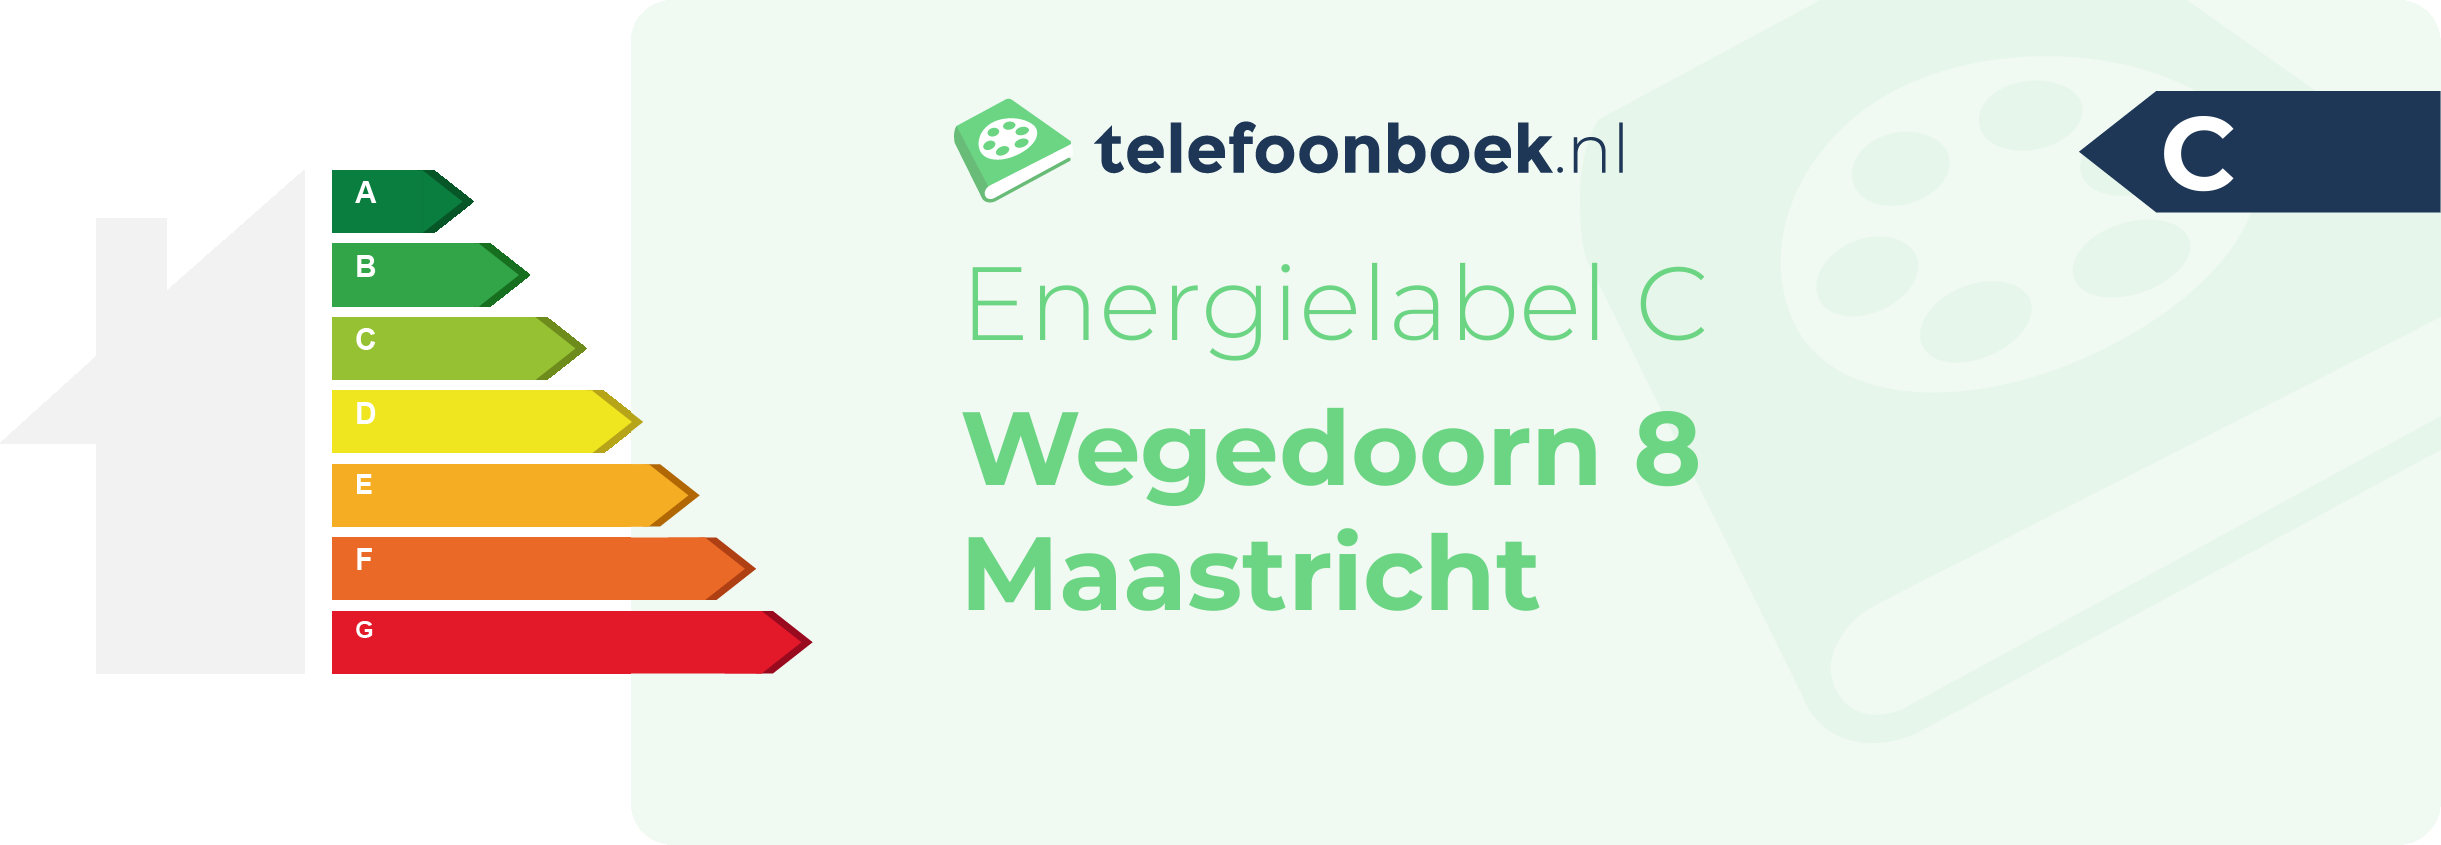 Energielabel Wegedoorn 8 Maastricht